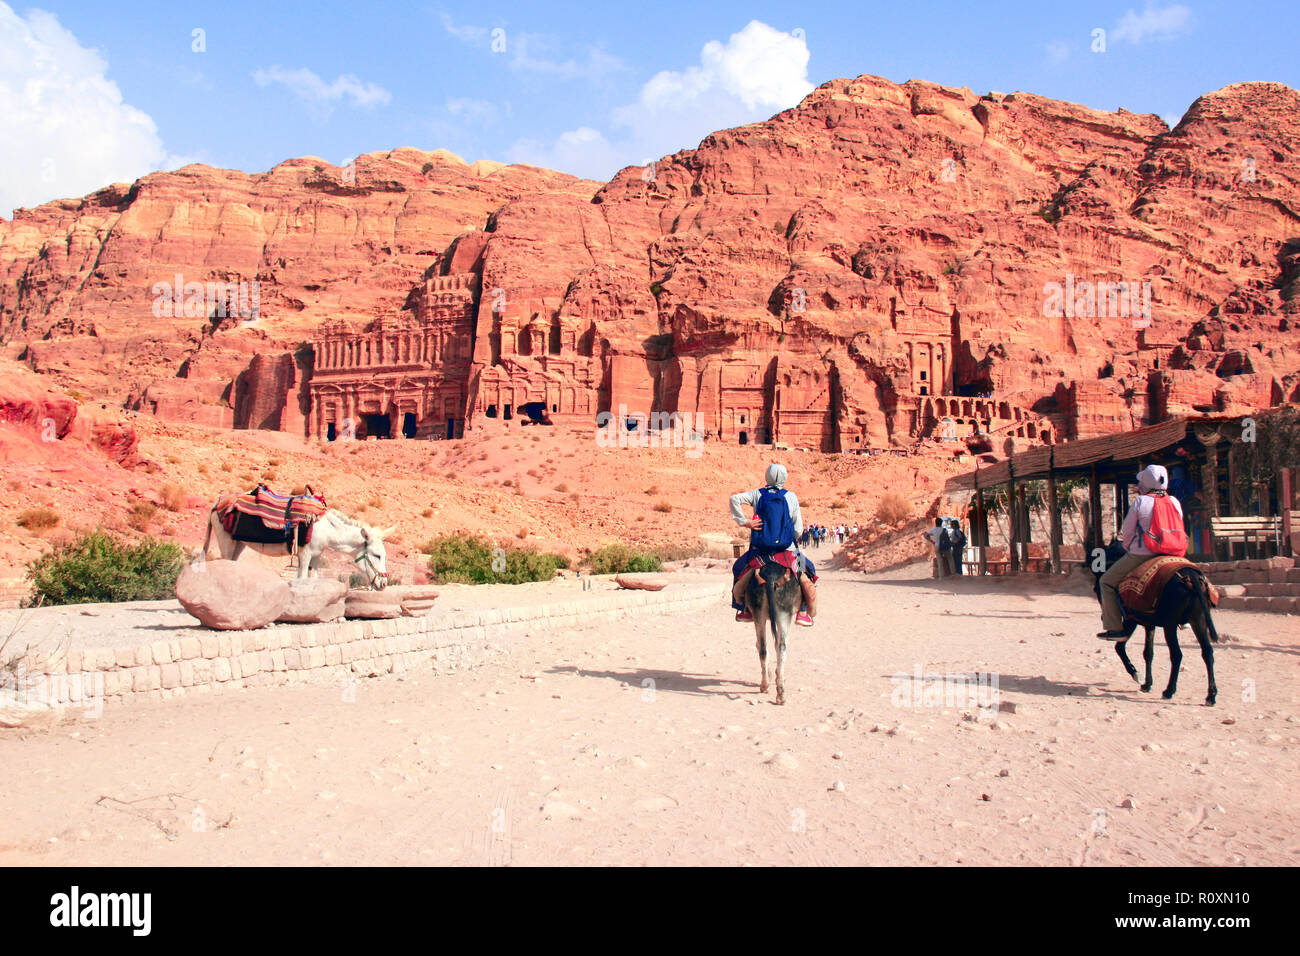 Les touristes monter sur les ânes à Petra (Rose City rouge), en Jordanie. Site du patrimoine mondial de l'UNESCO Banque D'Images